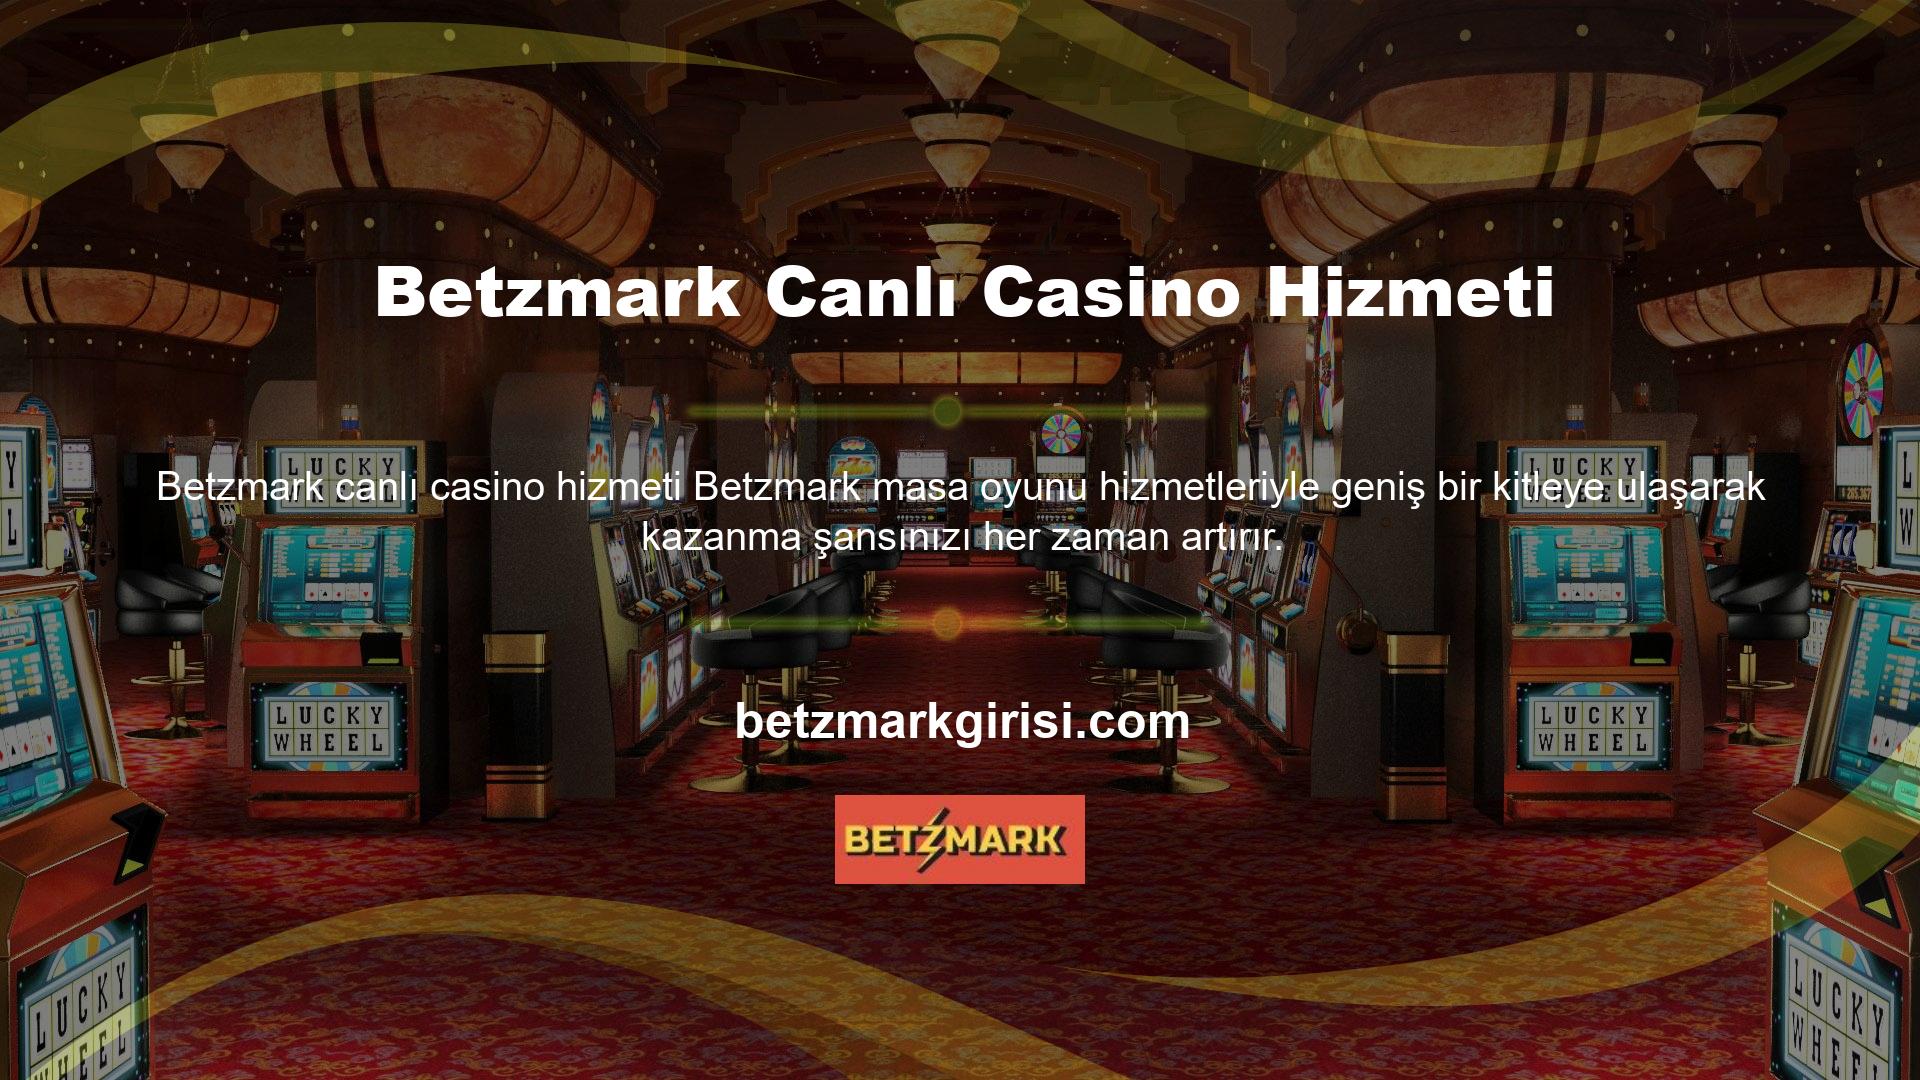 Canlı casino hizmetleri dünya standartlarında oyun altyapısı ve oyun türleri geliştirmiştir